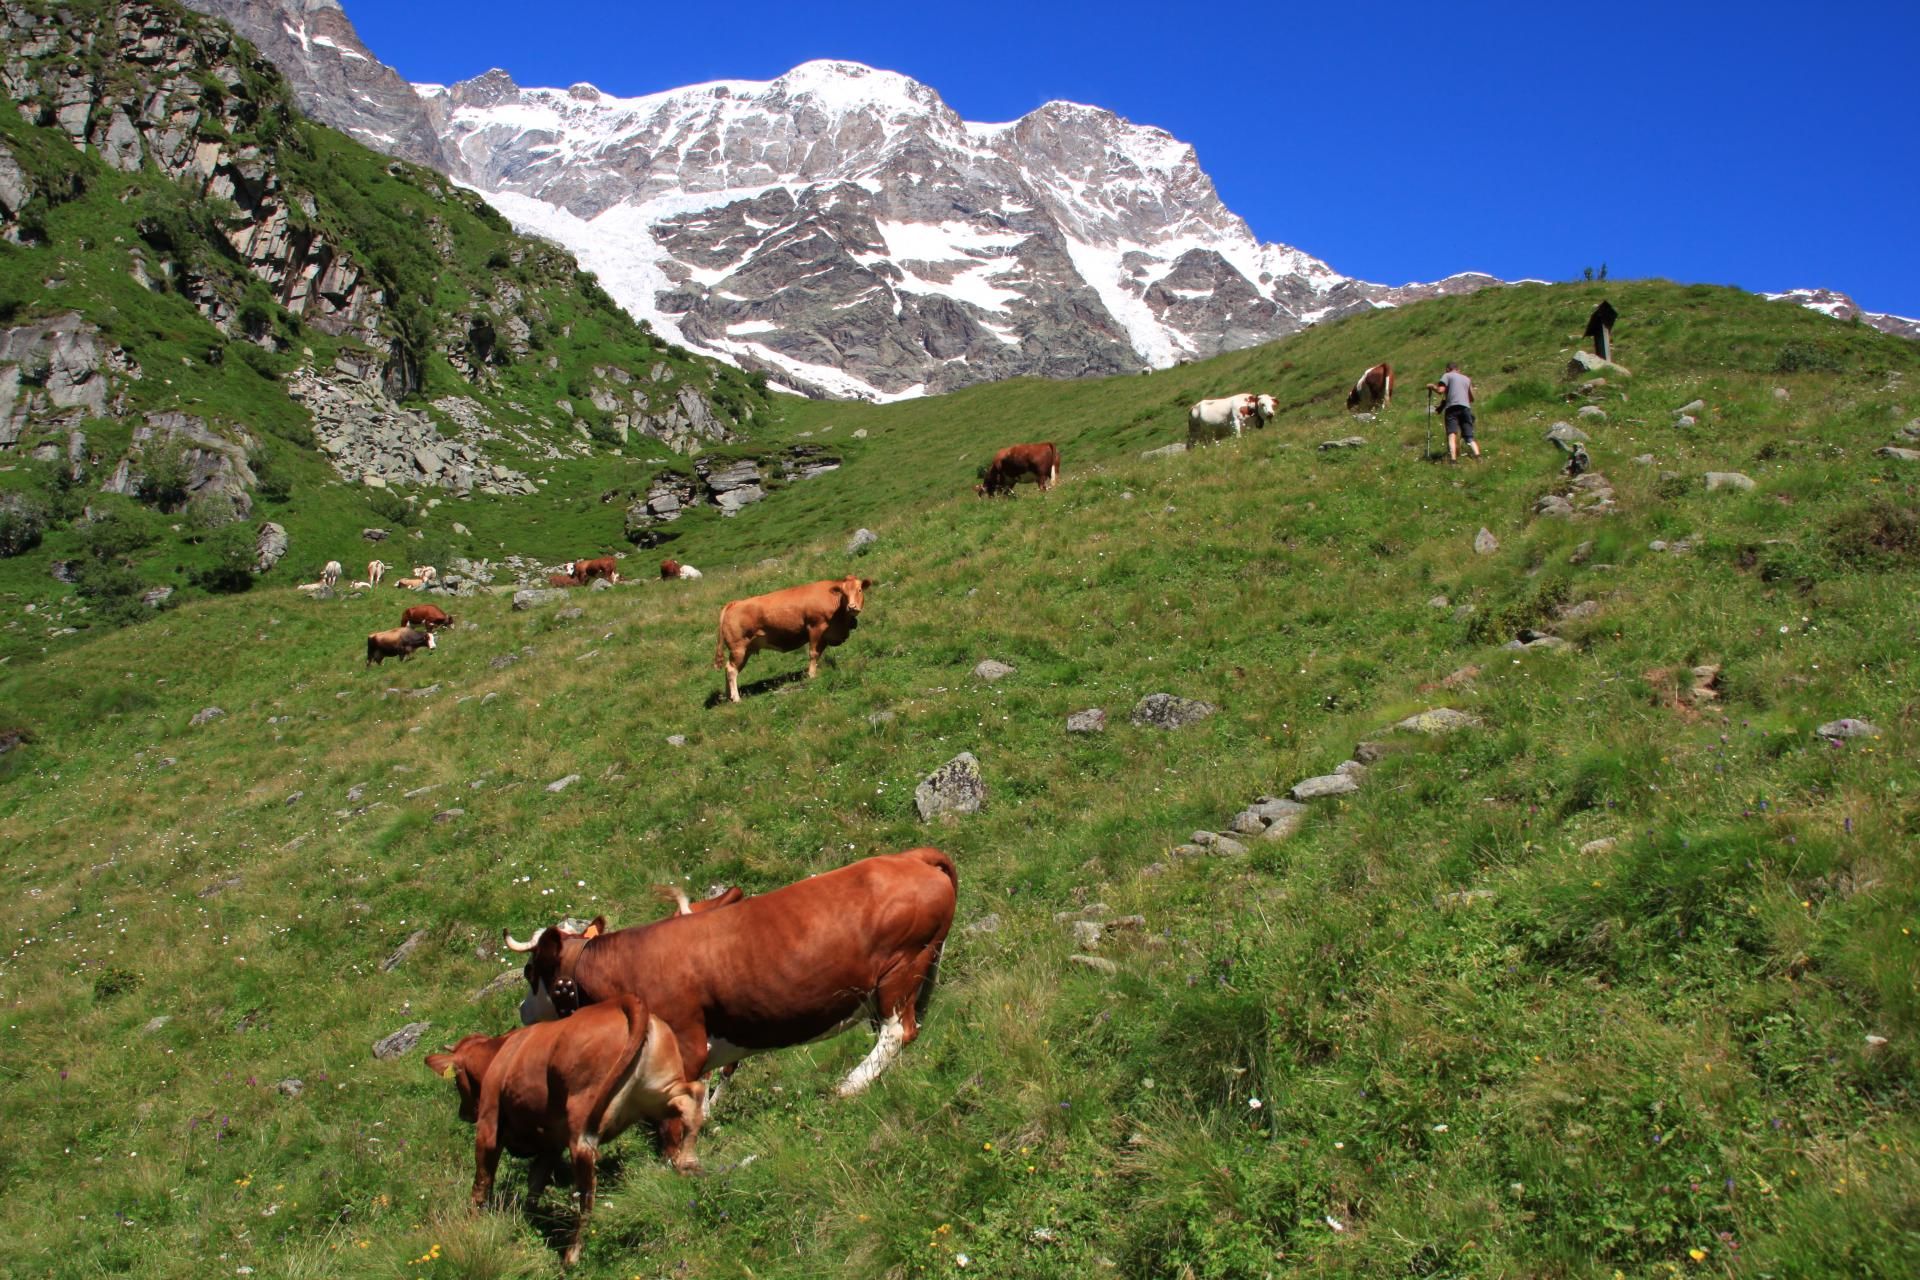 016 - Alpe Bors e rifugio Crespi Calderini, sullo sfondo il Monte Rosa.JPG